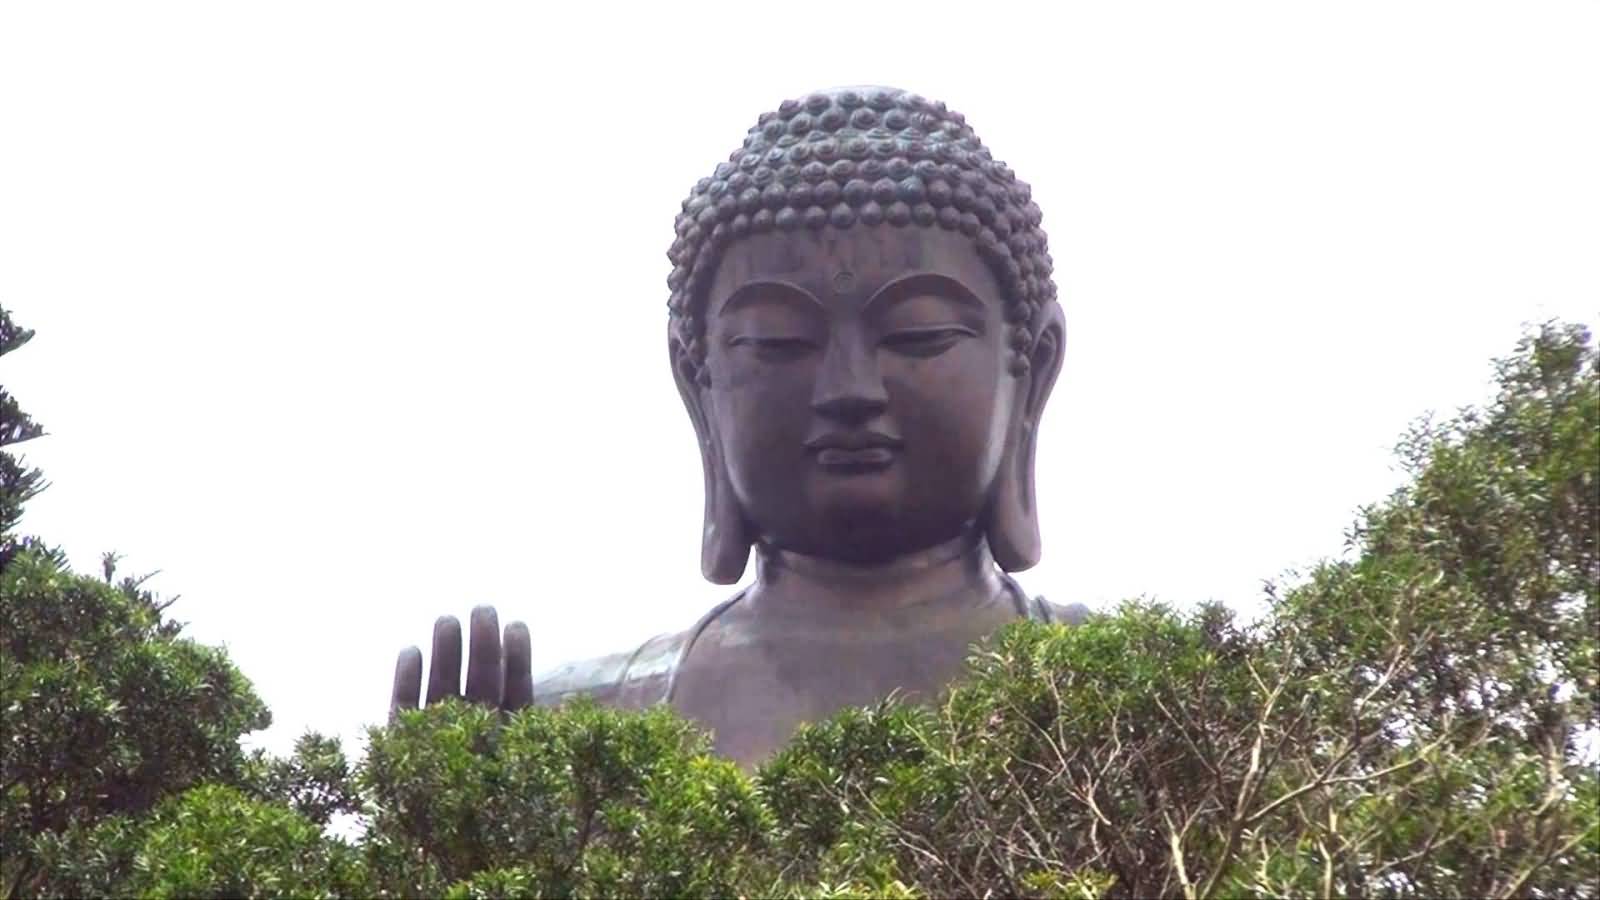 Tian Tan Buddha Statue Face View